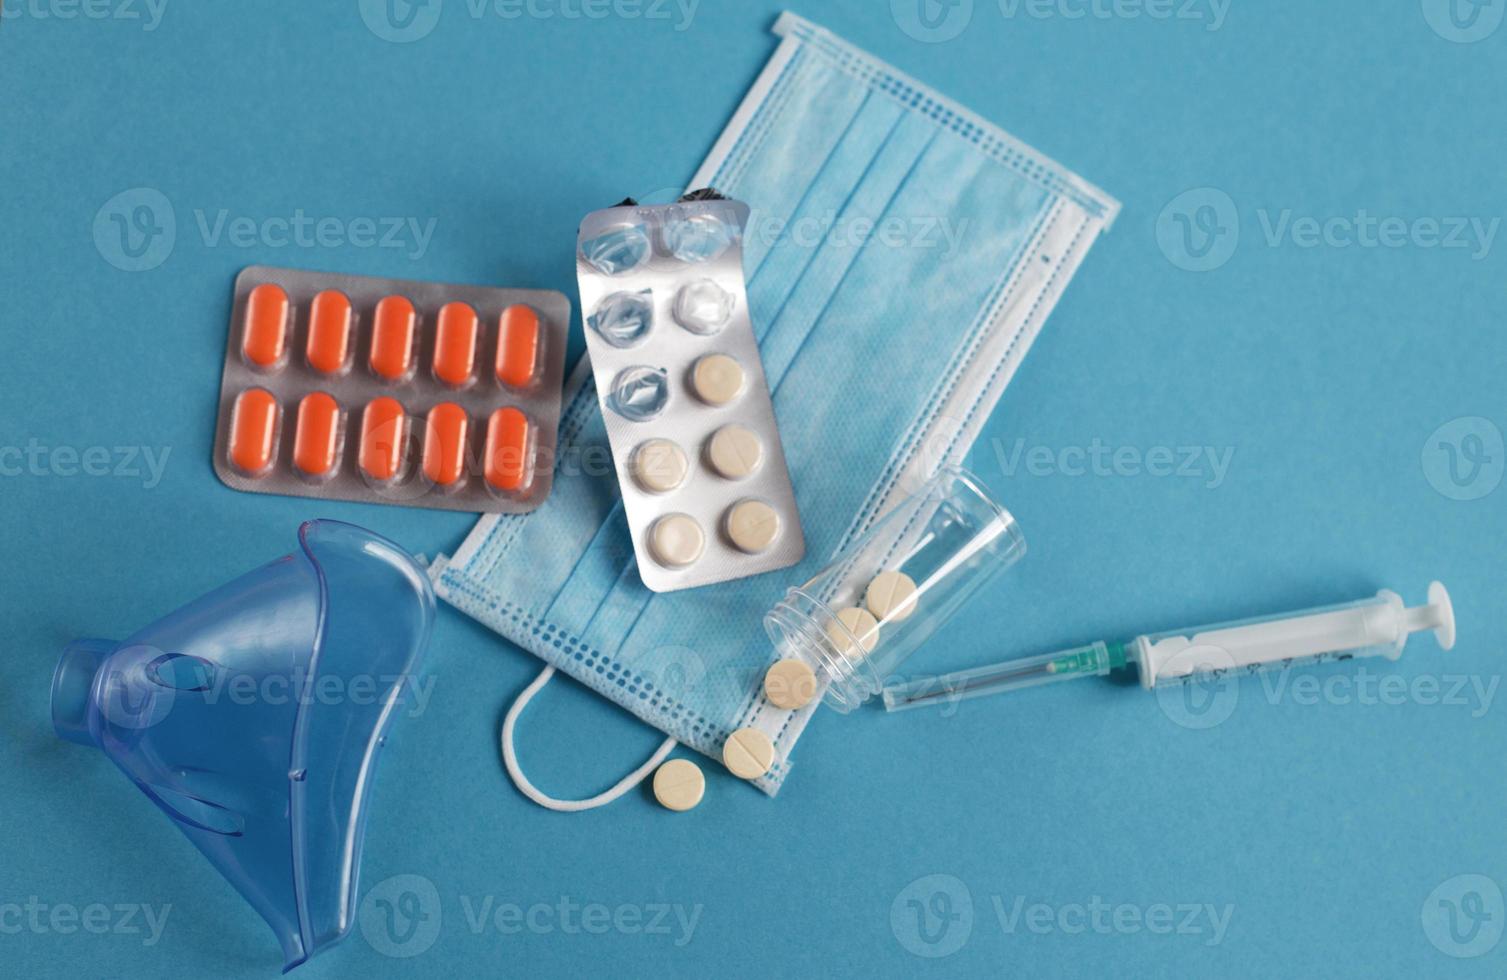 medicinsk mask, spruta, mask för inandning och tabletter stänga på de blå bakgrund. coronavirus, influensa sjukdom begrepp foto